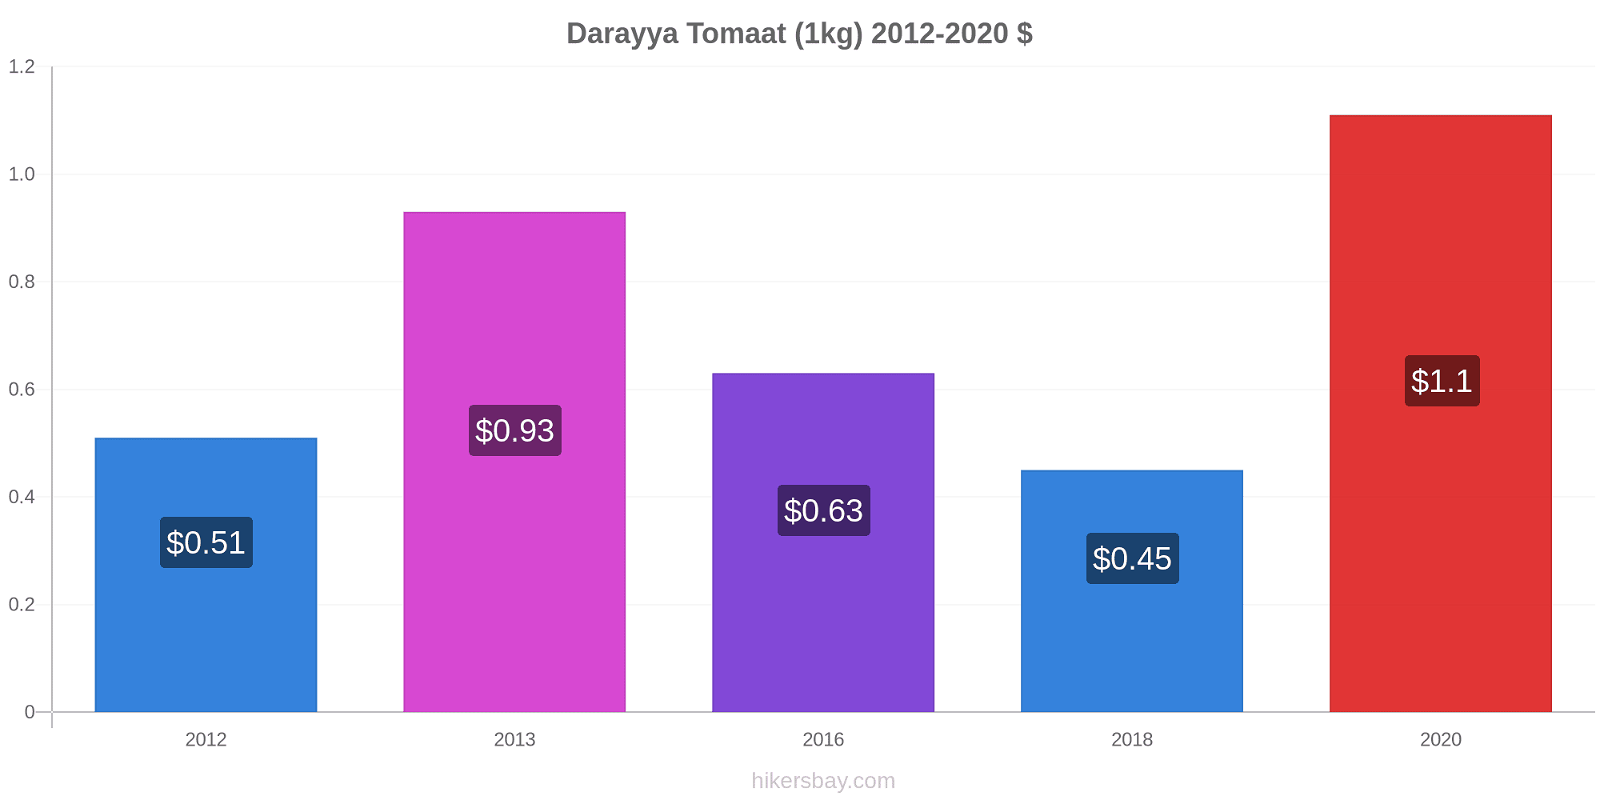 Darayya prijswijzigingen Tomaat (1kg) hikersbay.com